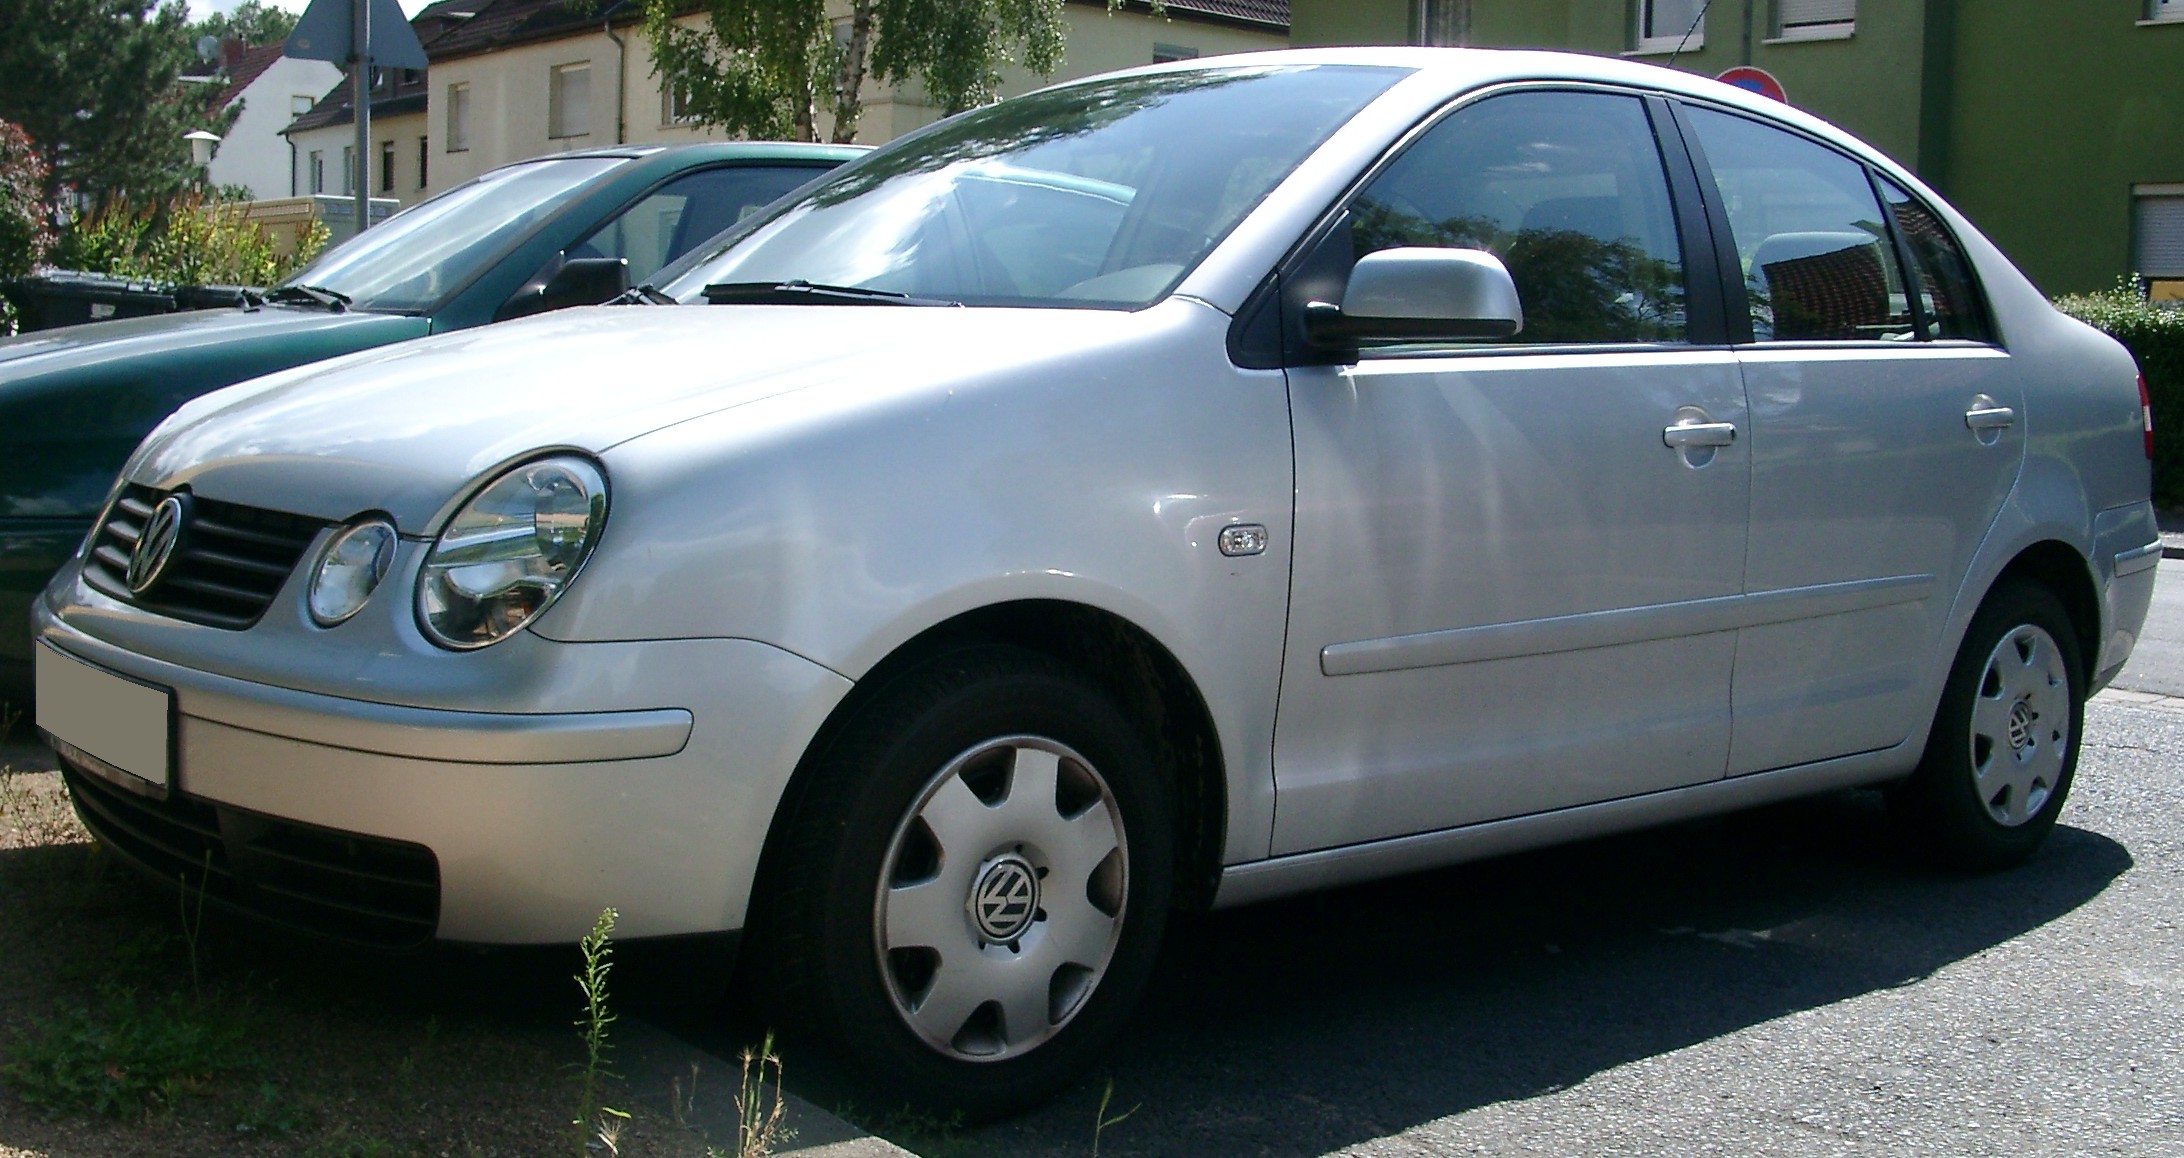 File:VW Polo rear 20070727.jpg - Wikimedia Commons